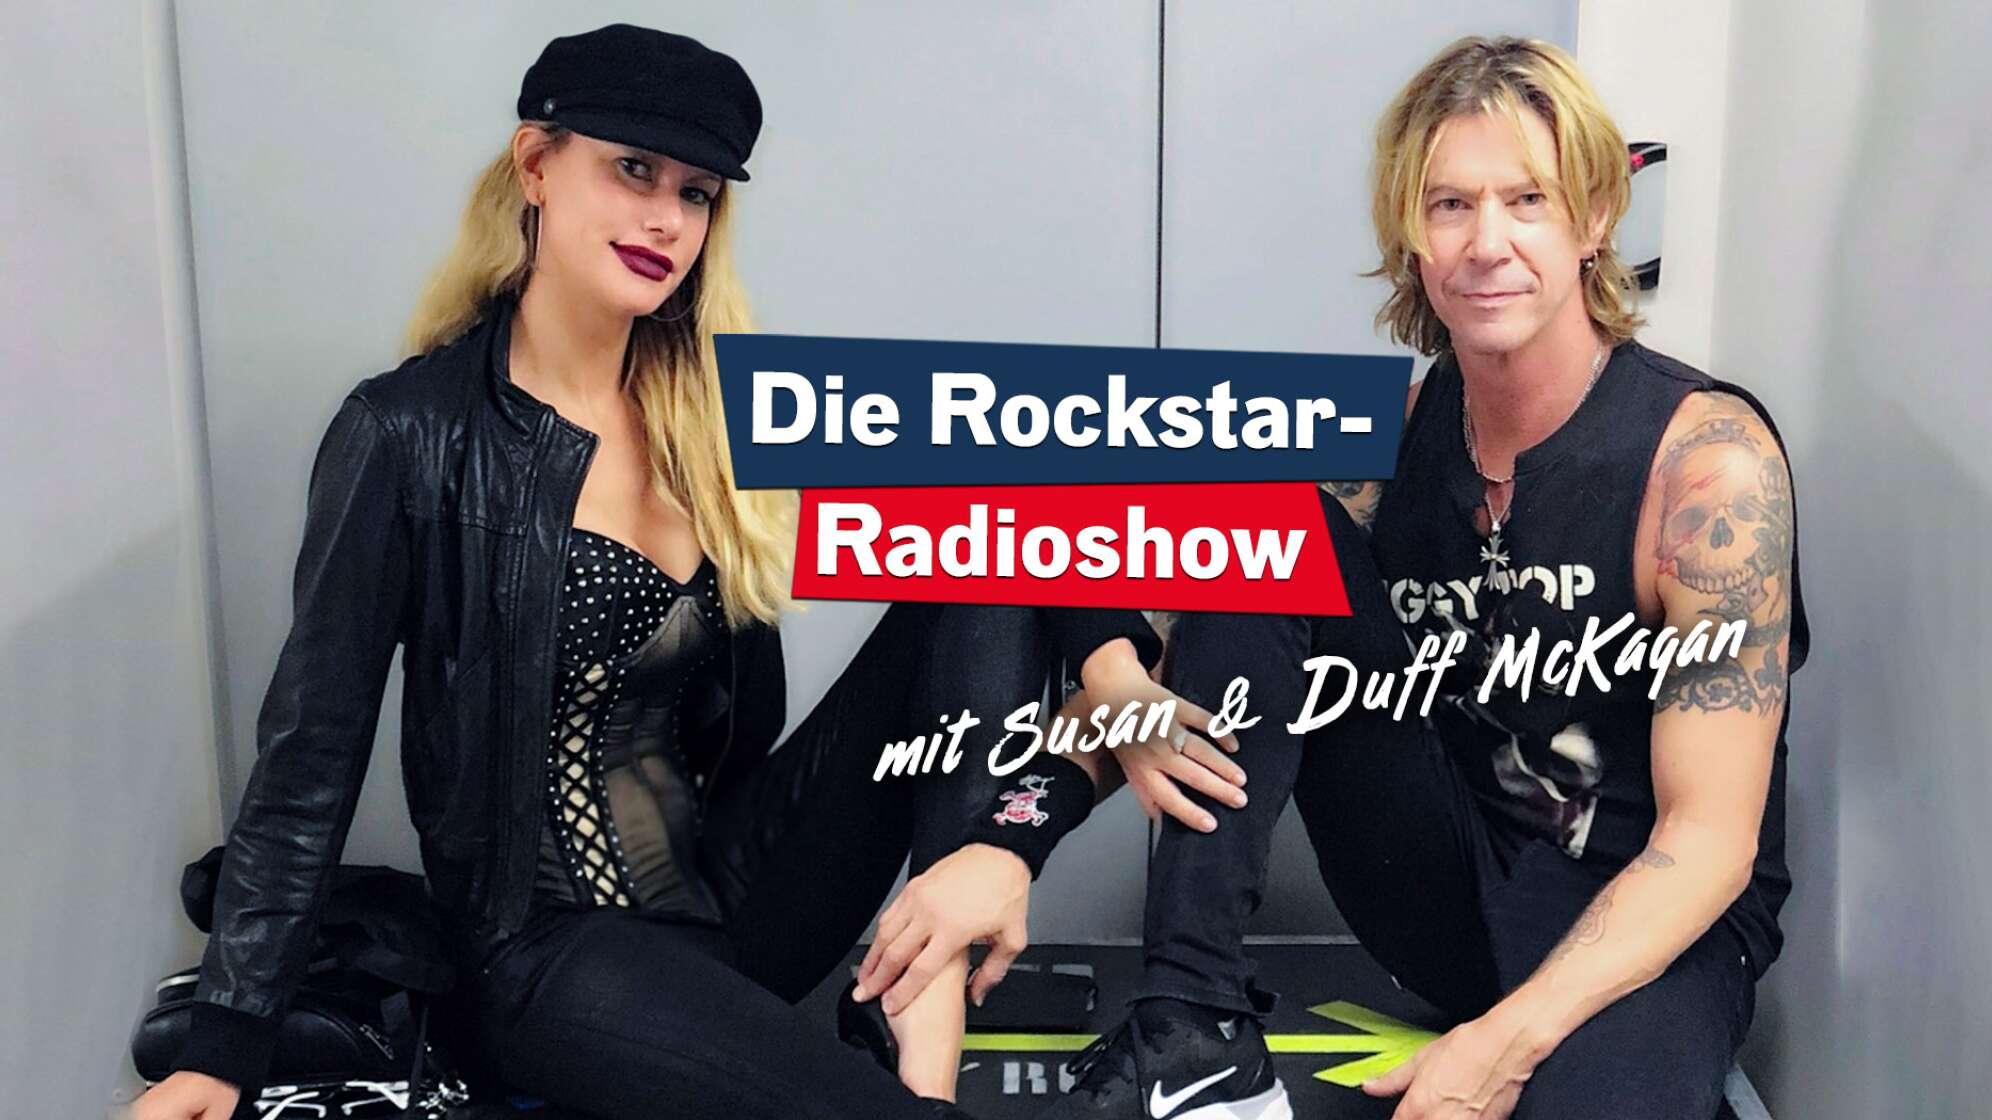 Die Rockstar-Radioshow mit Susan & Duff McKagan